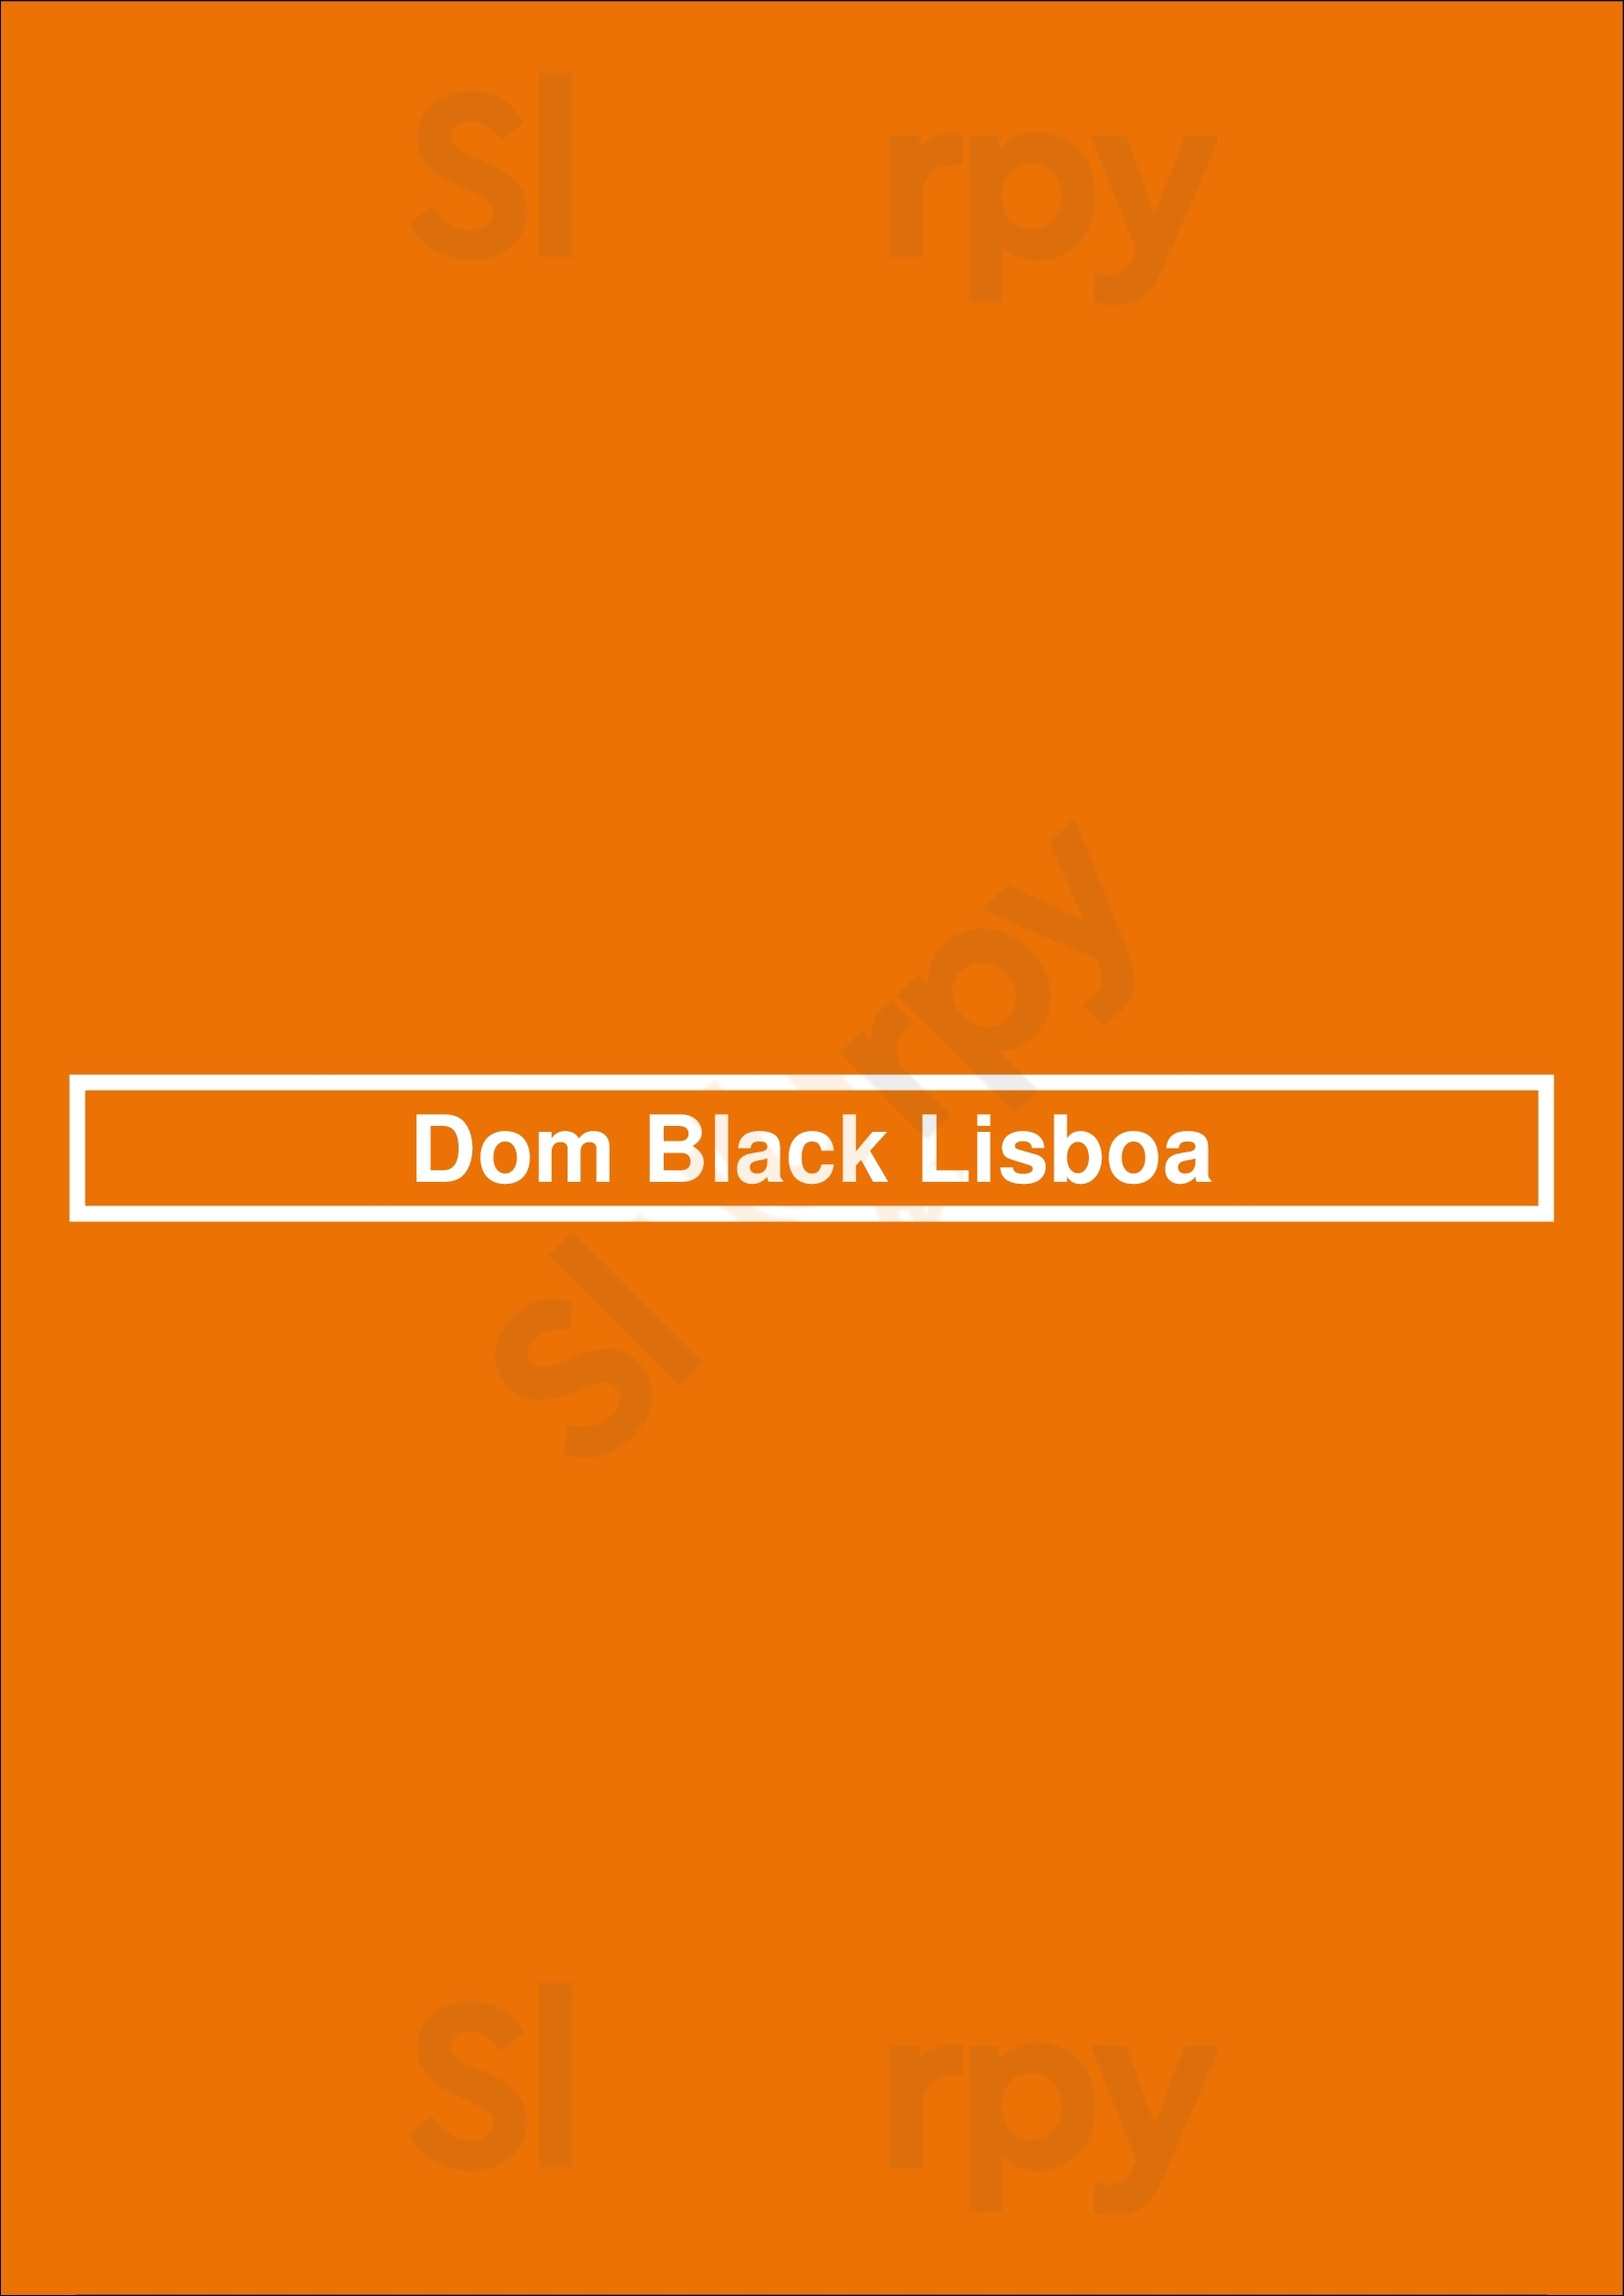 Dom Black Lisboa Lisboa Menu - 1